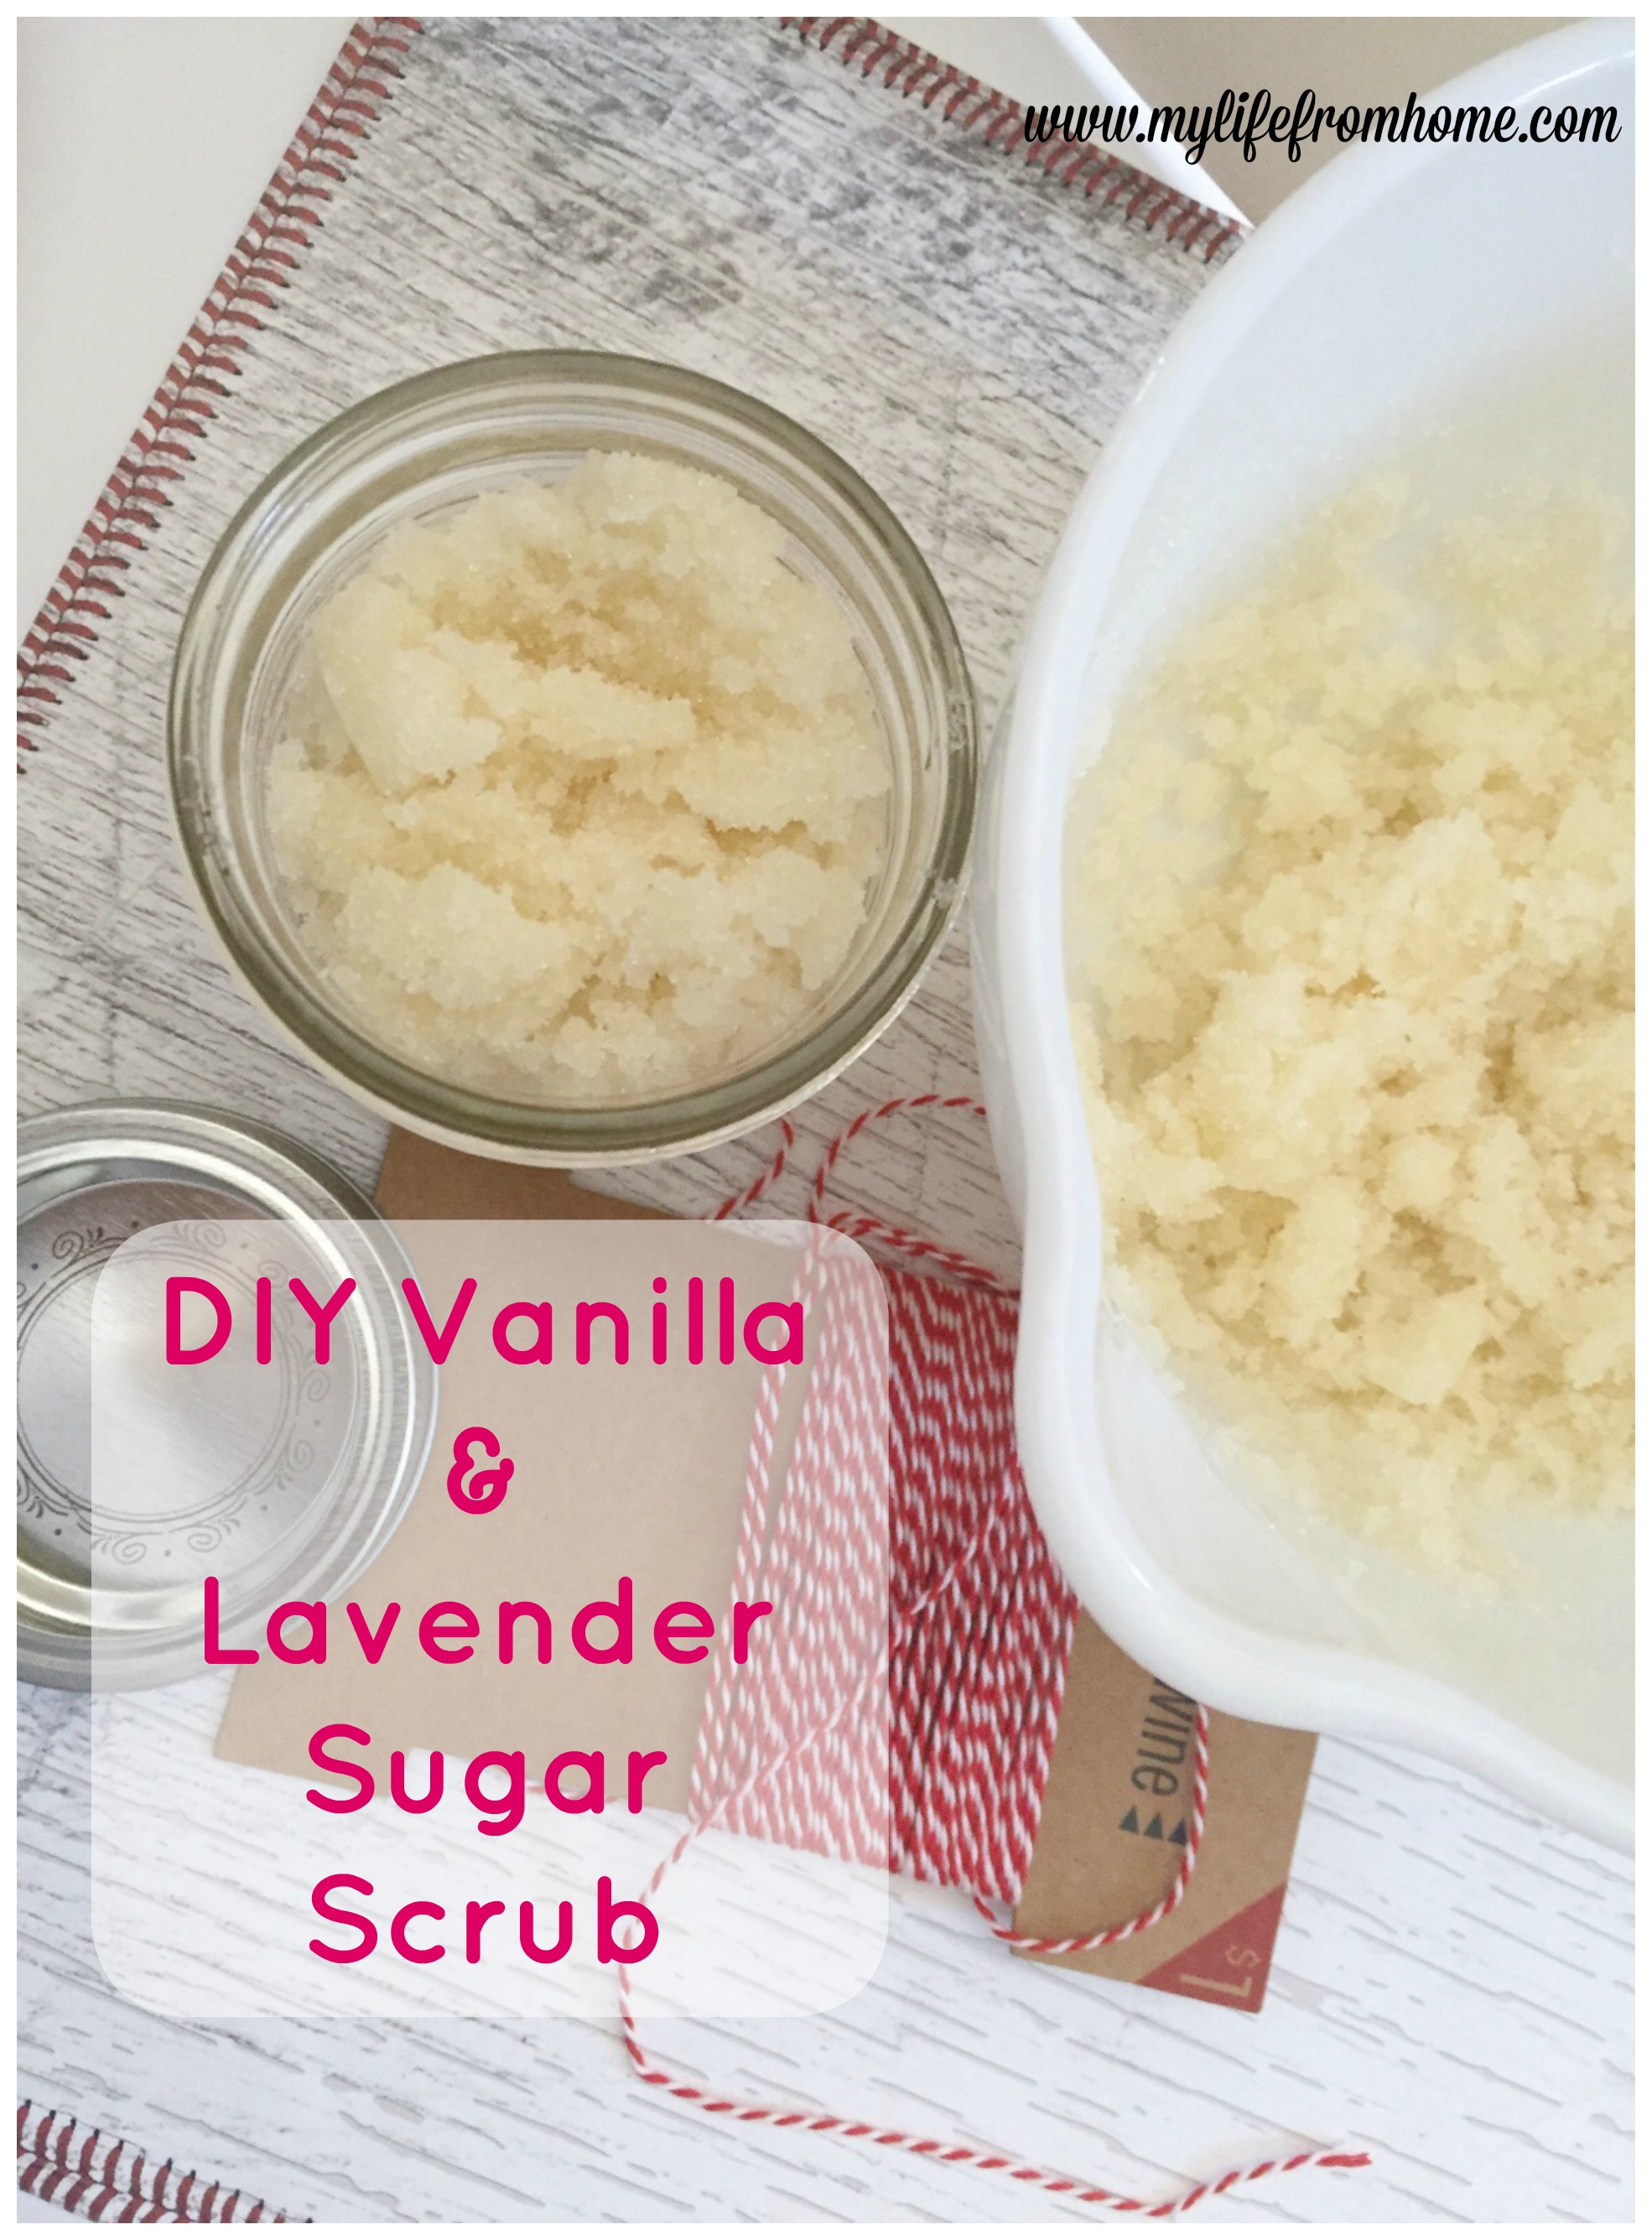 DIY Vanilla & Lavender Sugar Scrub by www.mylifefromhome.com